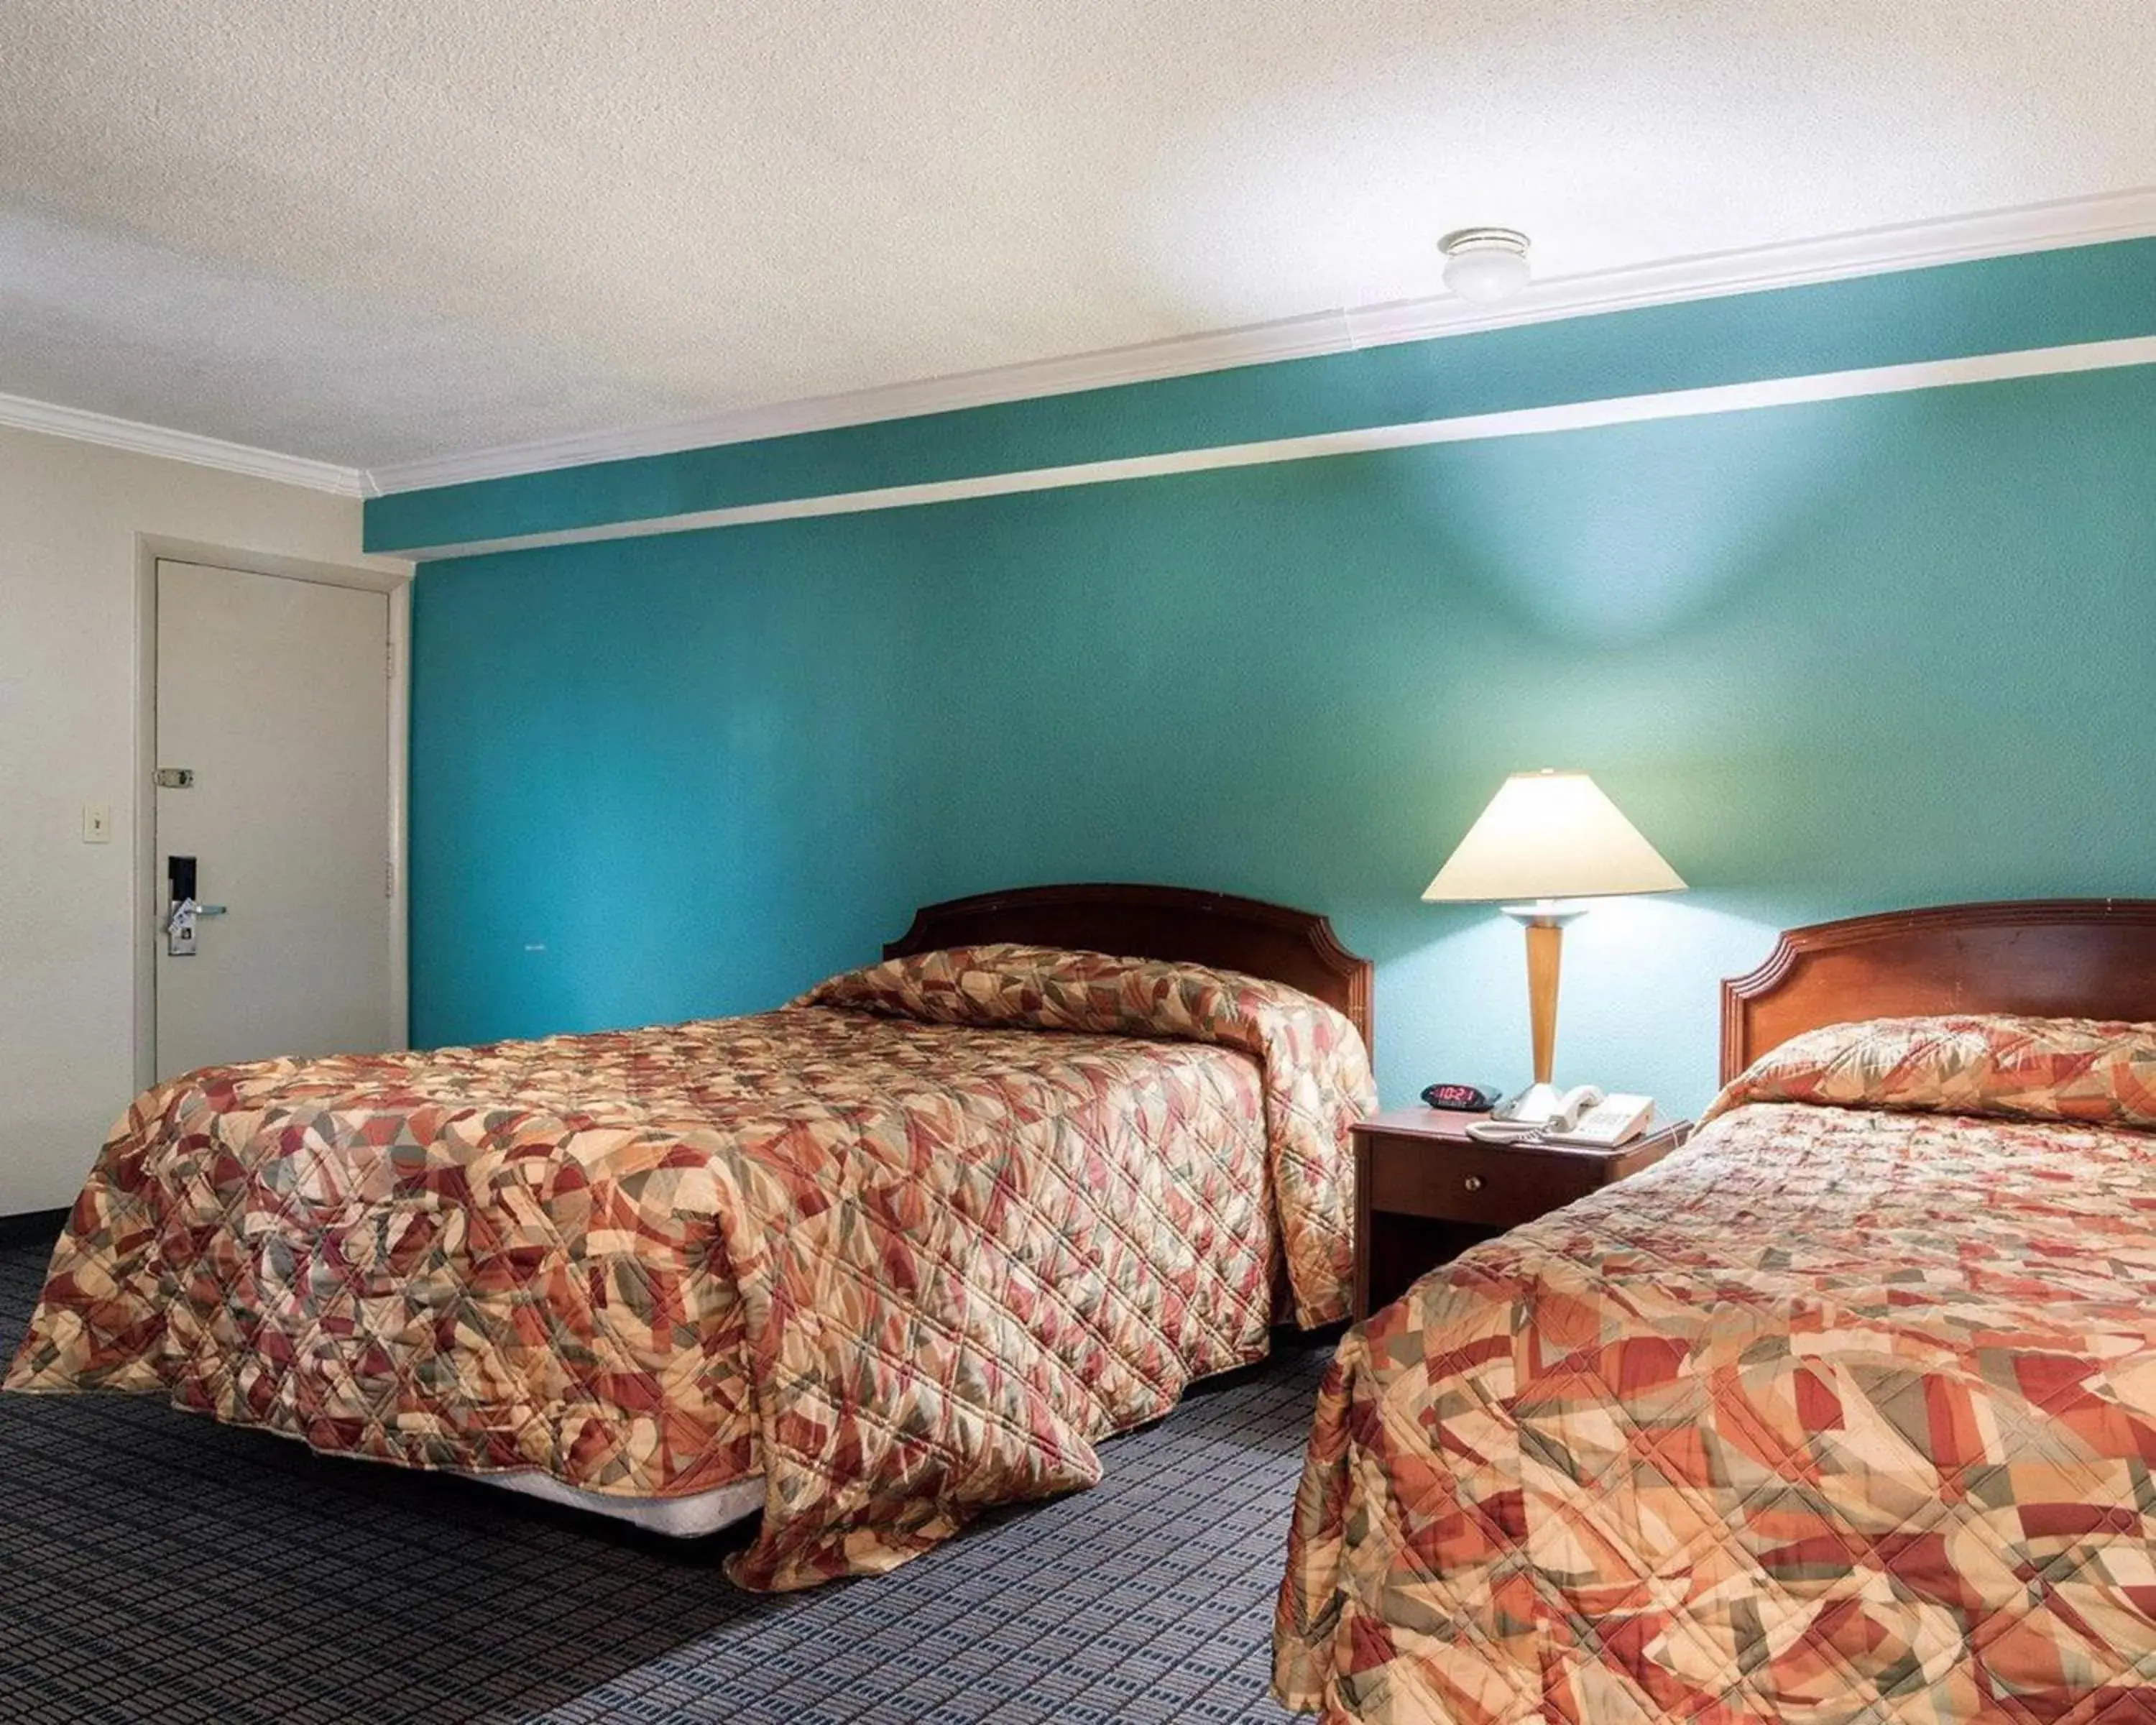 Bed, Room Photo in Rodeway Inn Syracuse